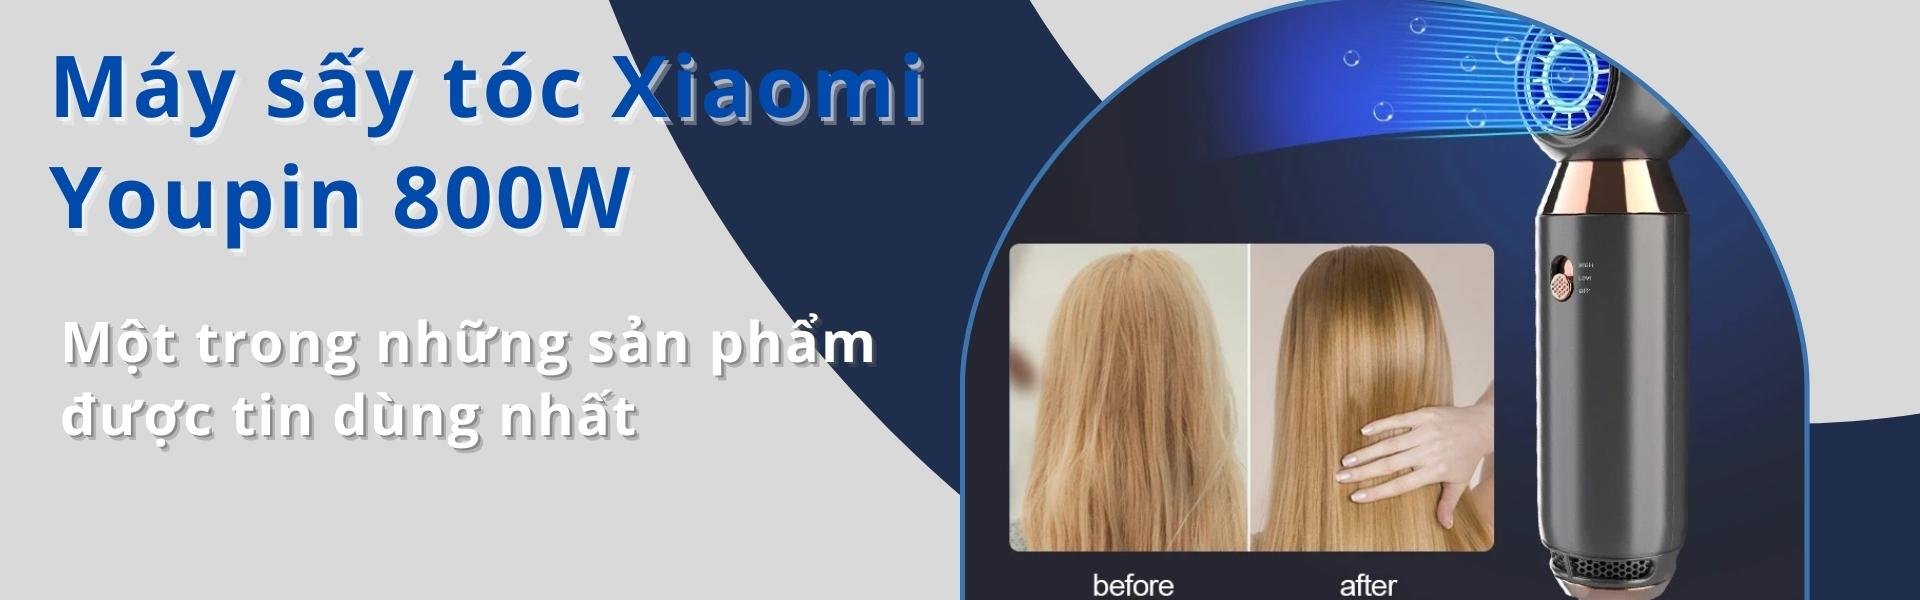 Máy sấy tóc Xiaomi Youpin 800W tạo ion âm với nhiệt độ không đổi giúp tạo kiểu tóc nhanh chuyên nghiệp